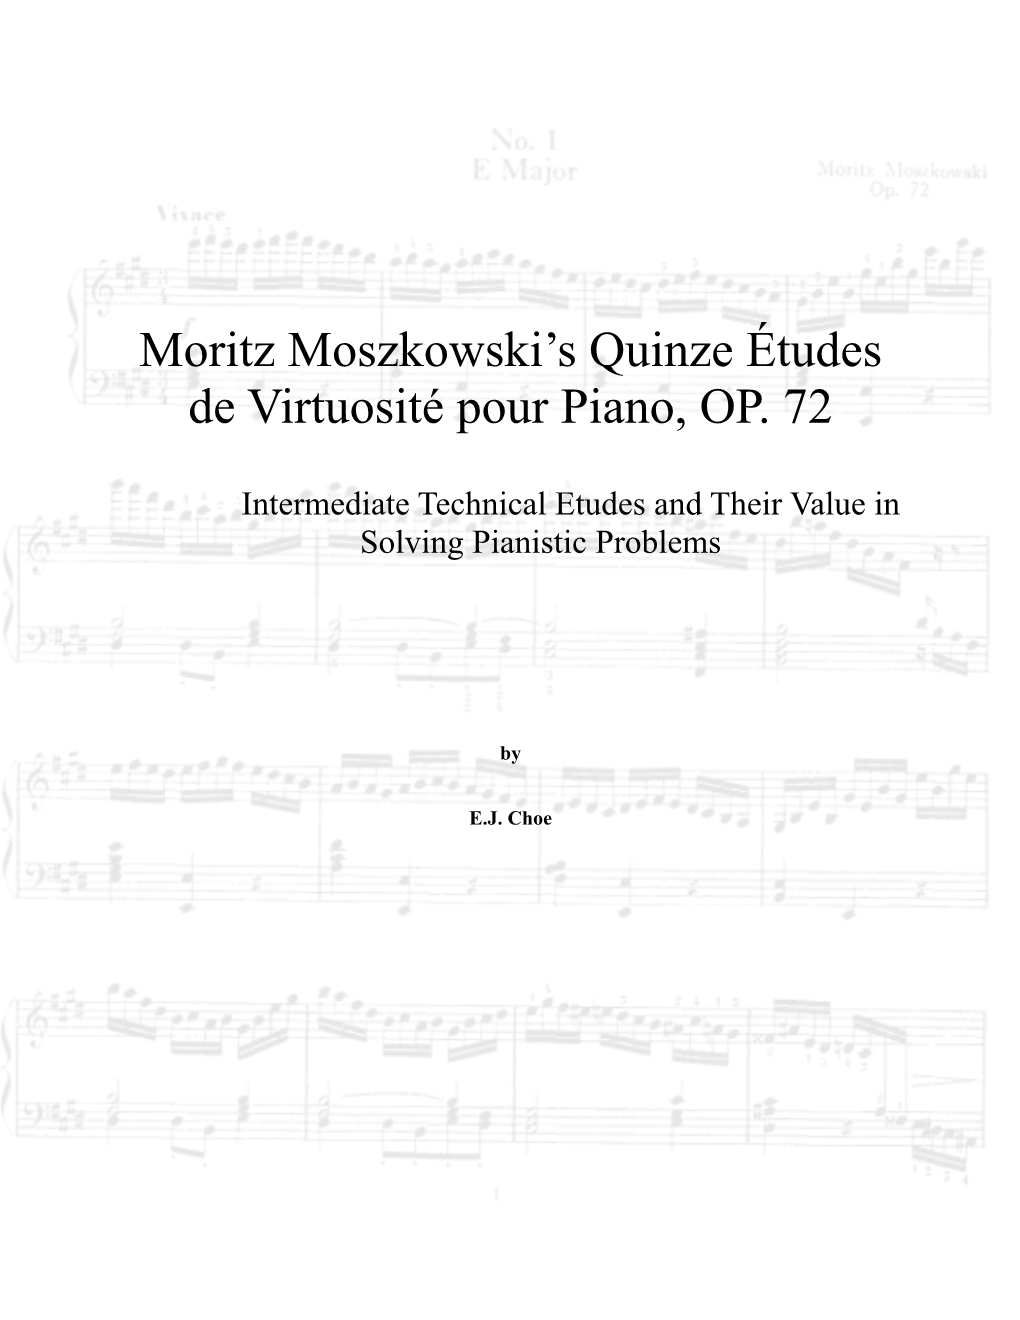 Moritz Moszkowski's Quinze Études De Virtuosité Pour Piano, OP. 72